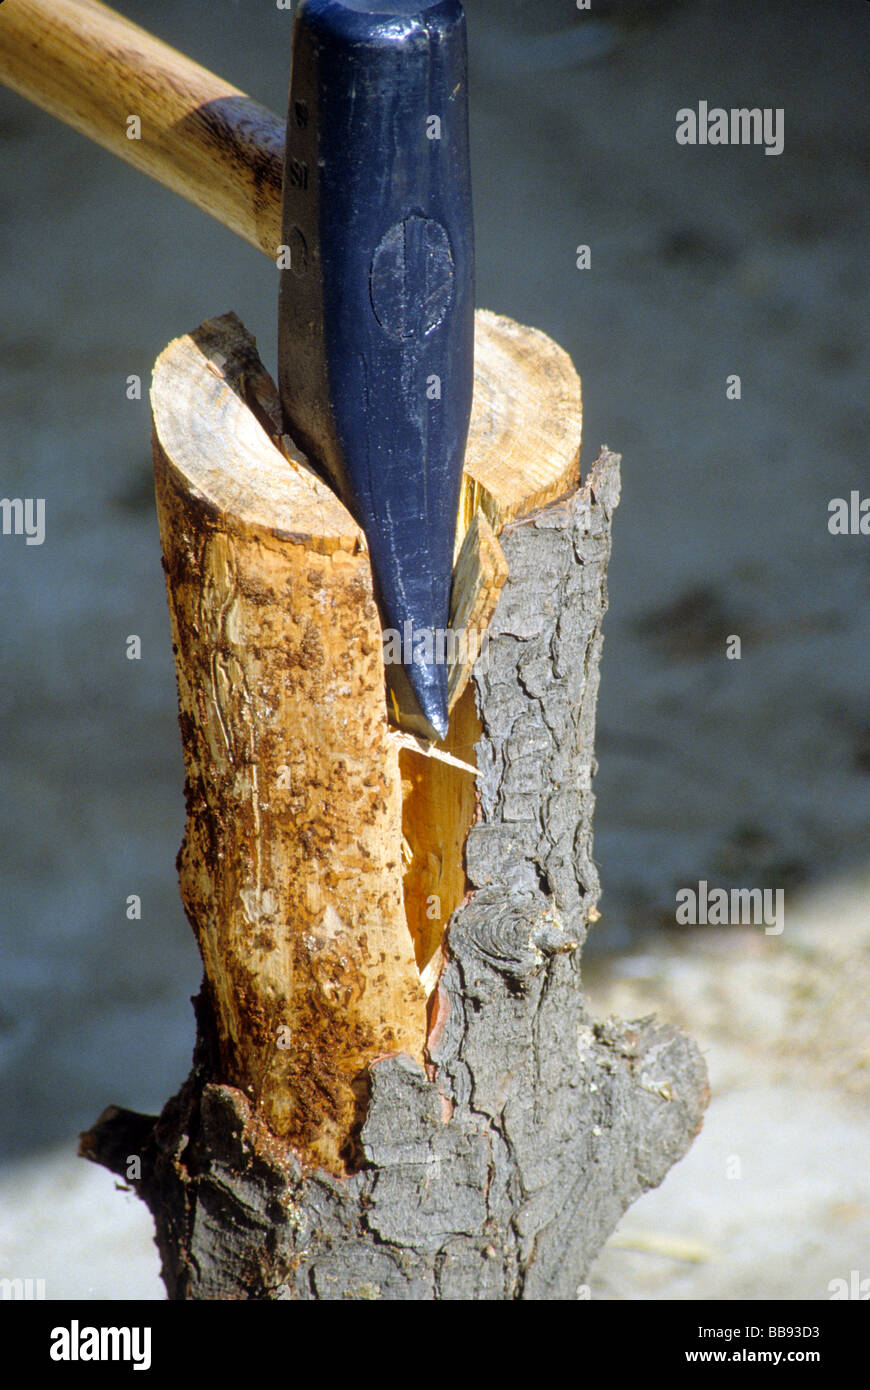 Axt Keil schneiden hacken Split Holzblock Maschine Hebel macht Gewicht Schaukel Tool Dechsel Stockfoto